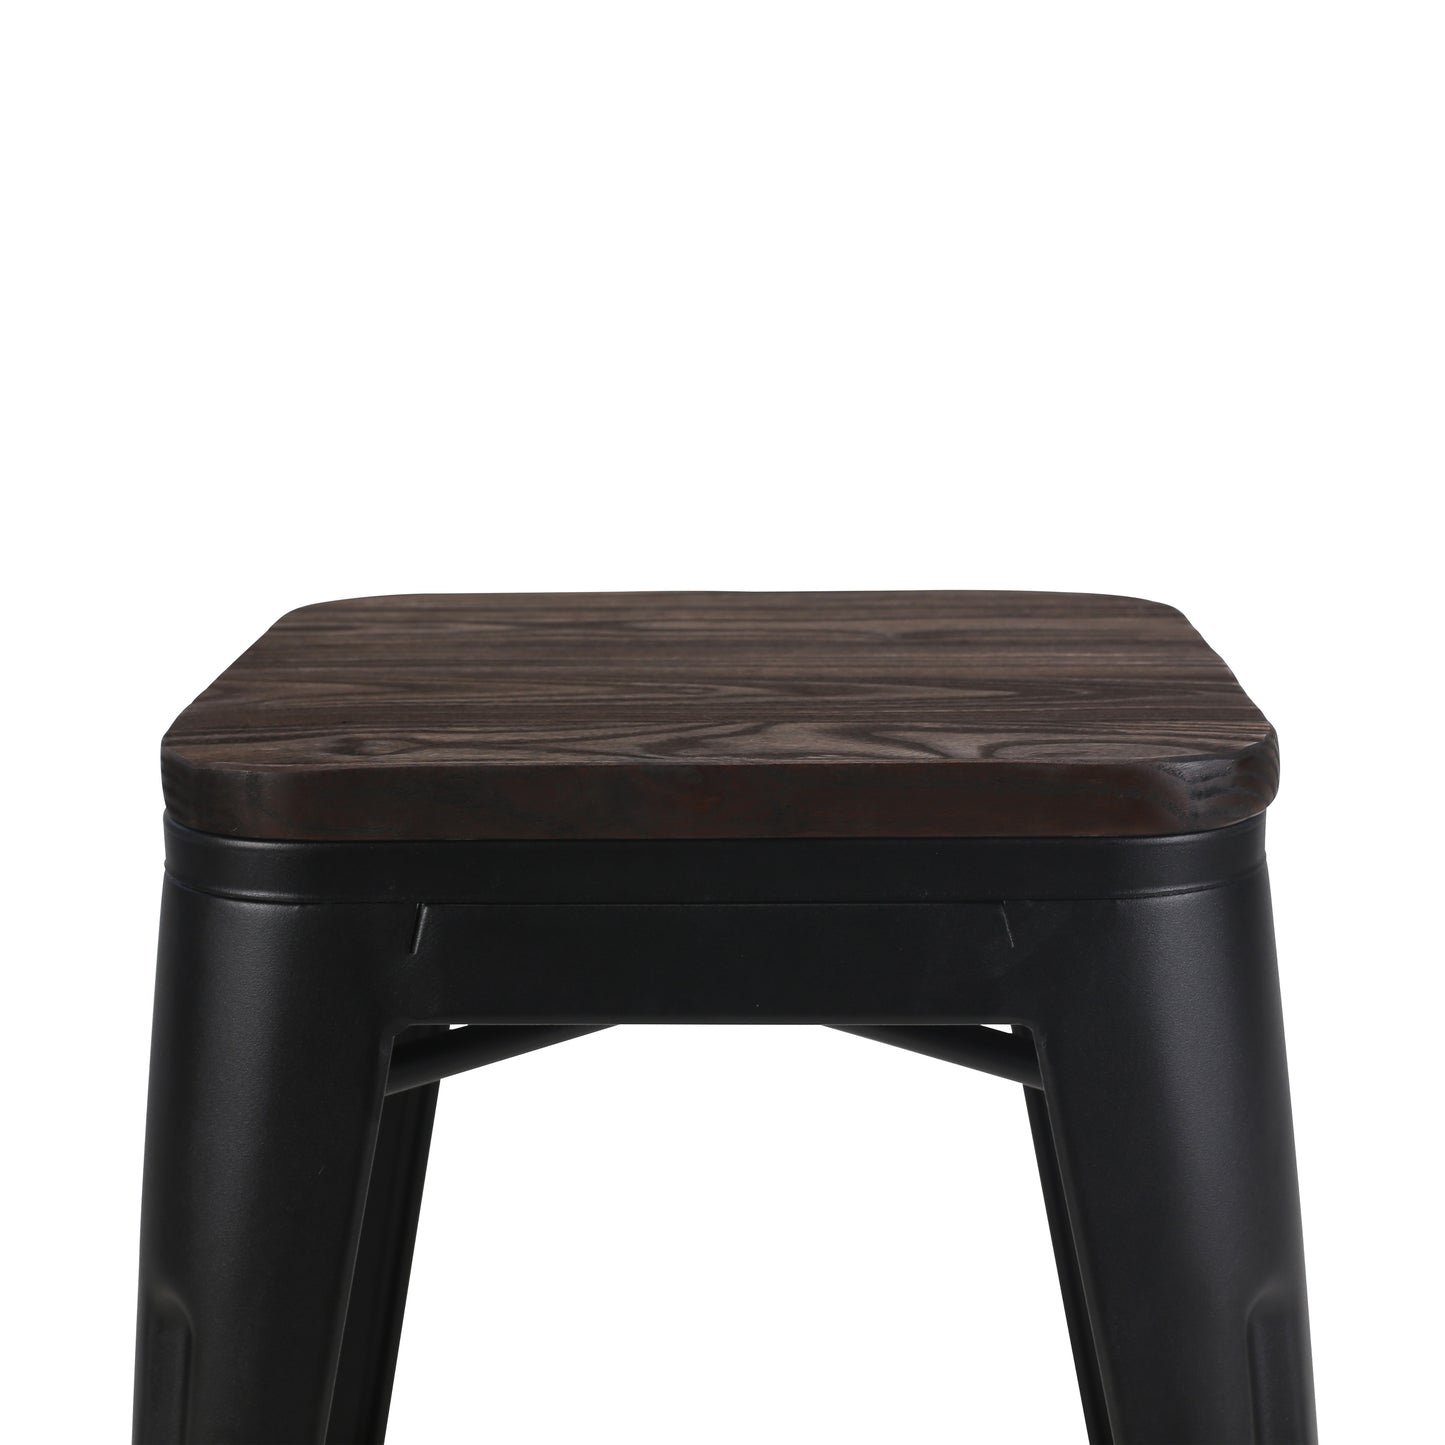 Tabouret en métal noir mat style industriel et assise en bois foncé - Sans dossier - Hauteur 46 cm